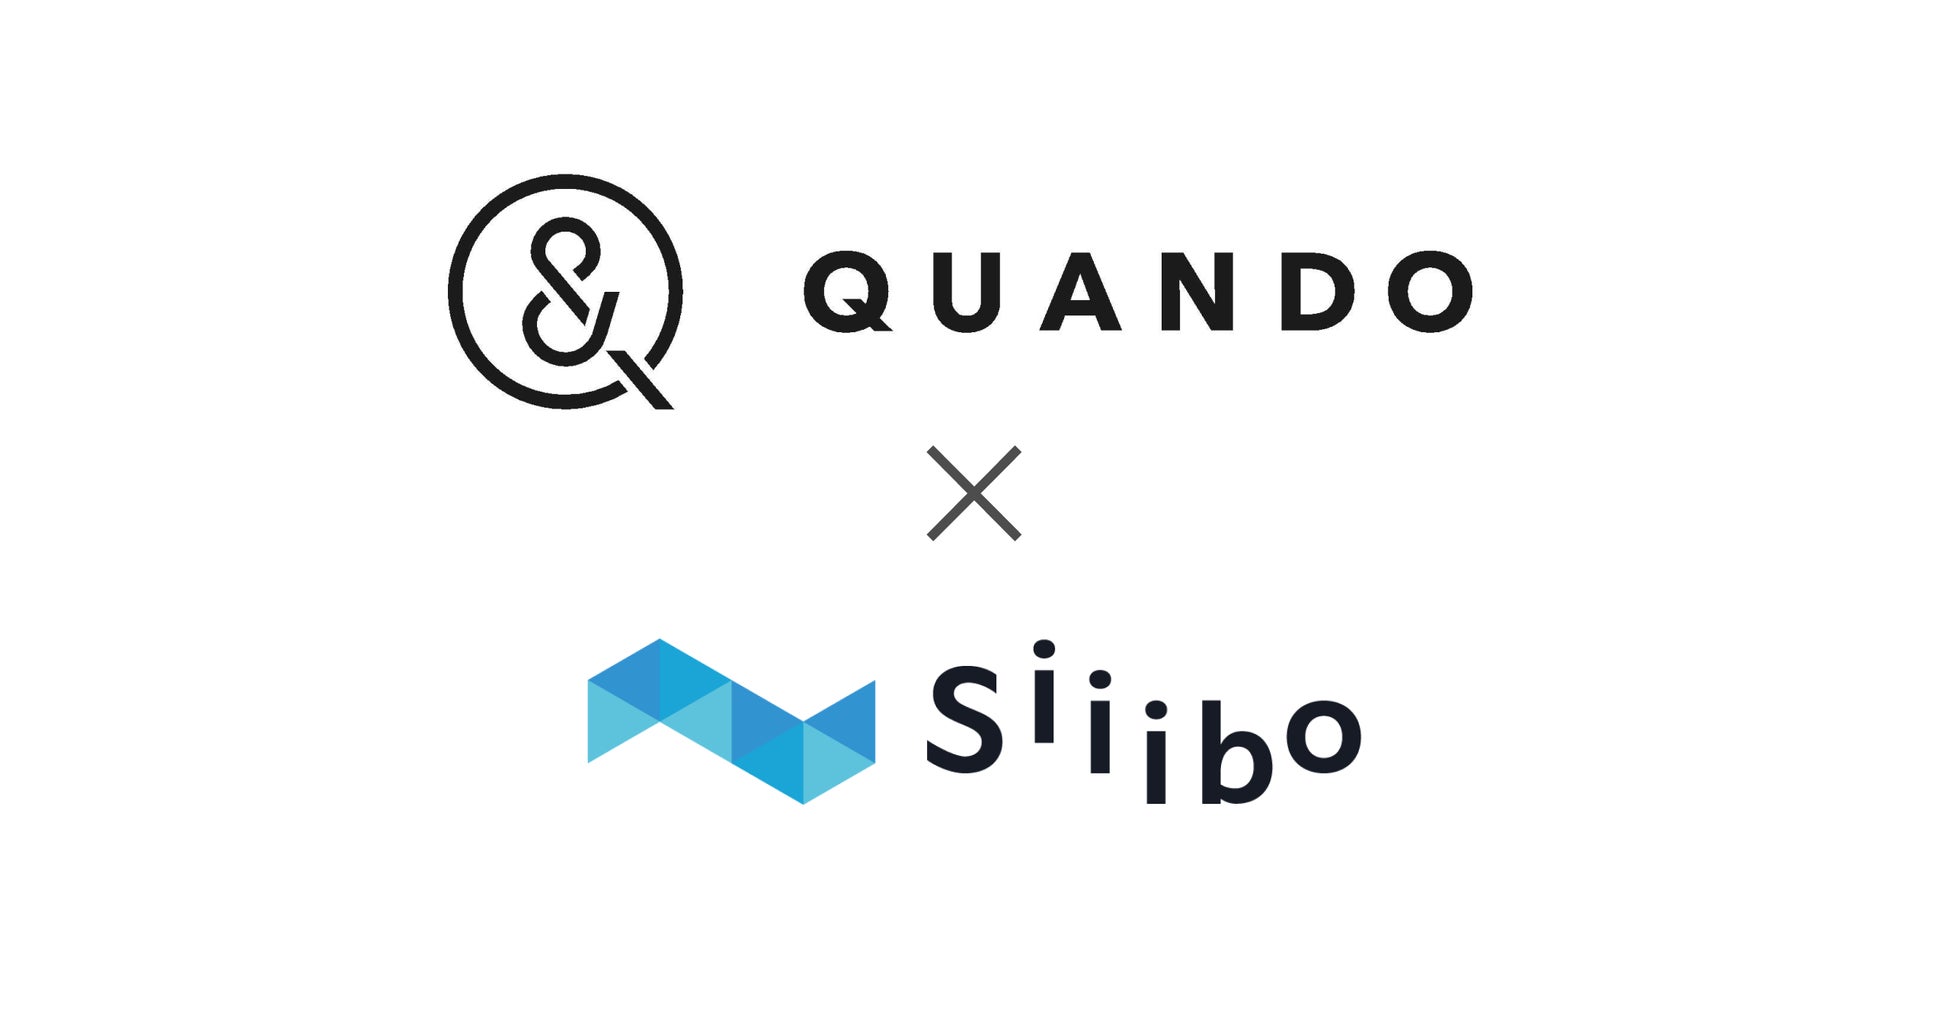 現場作業の効率化を支援する遠隔支援ツールSynQ Remoteを開発・提供するクアンドが、Siiibo証券を活用し社債発行